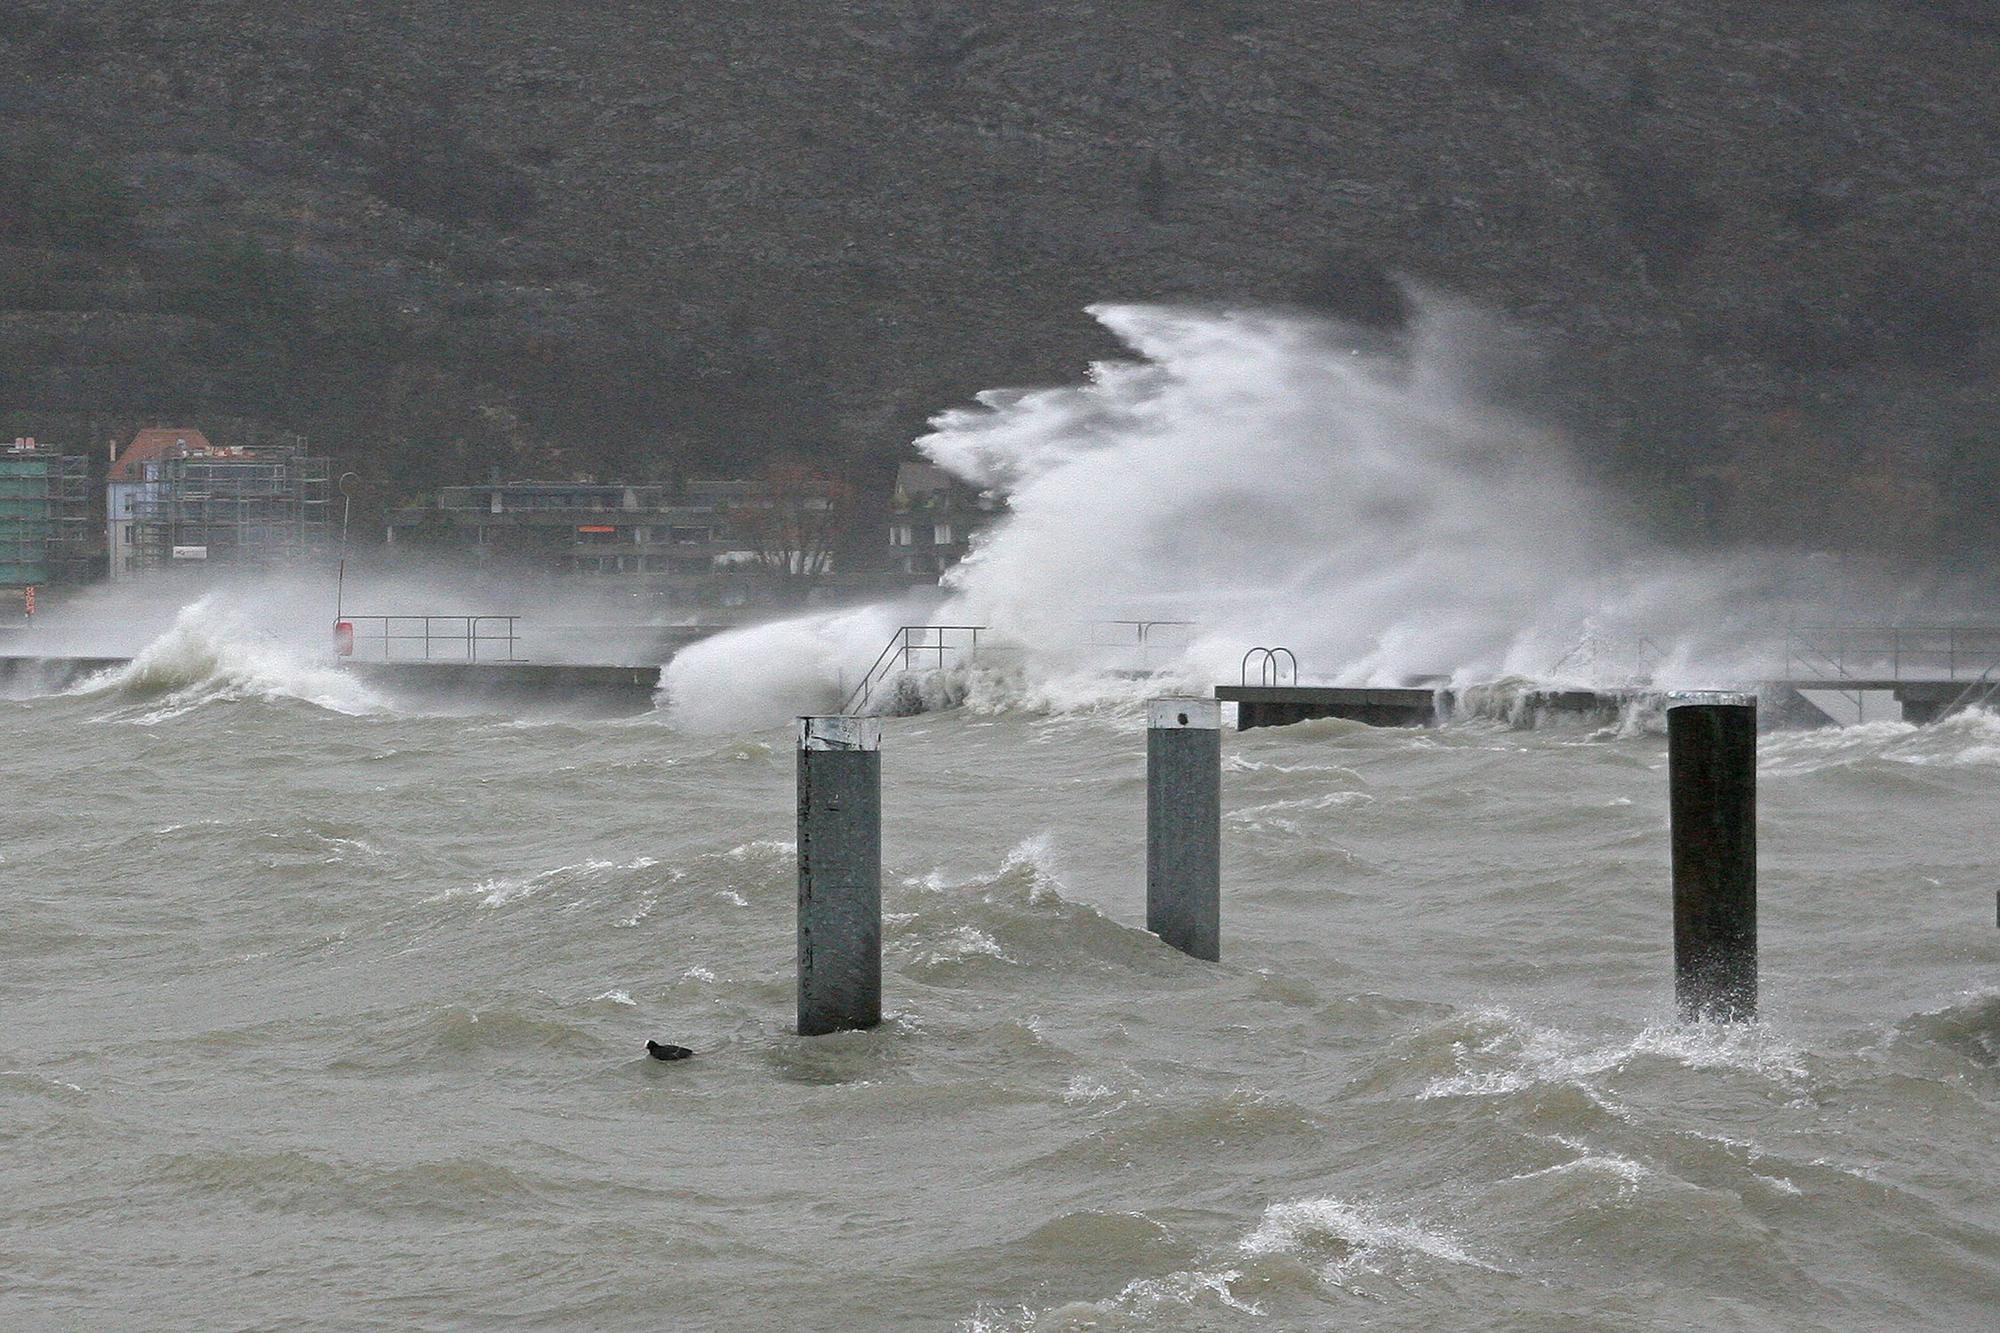 Des vagues impressionnantes sur le lac de Bienne jeudi. [Cédric Maire]